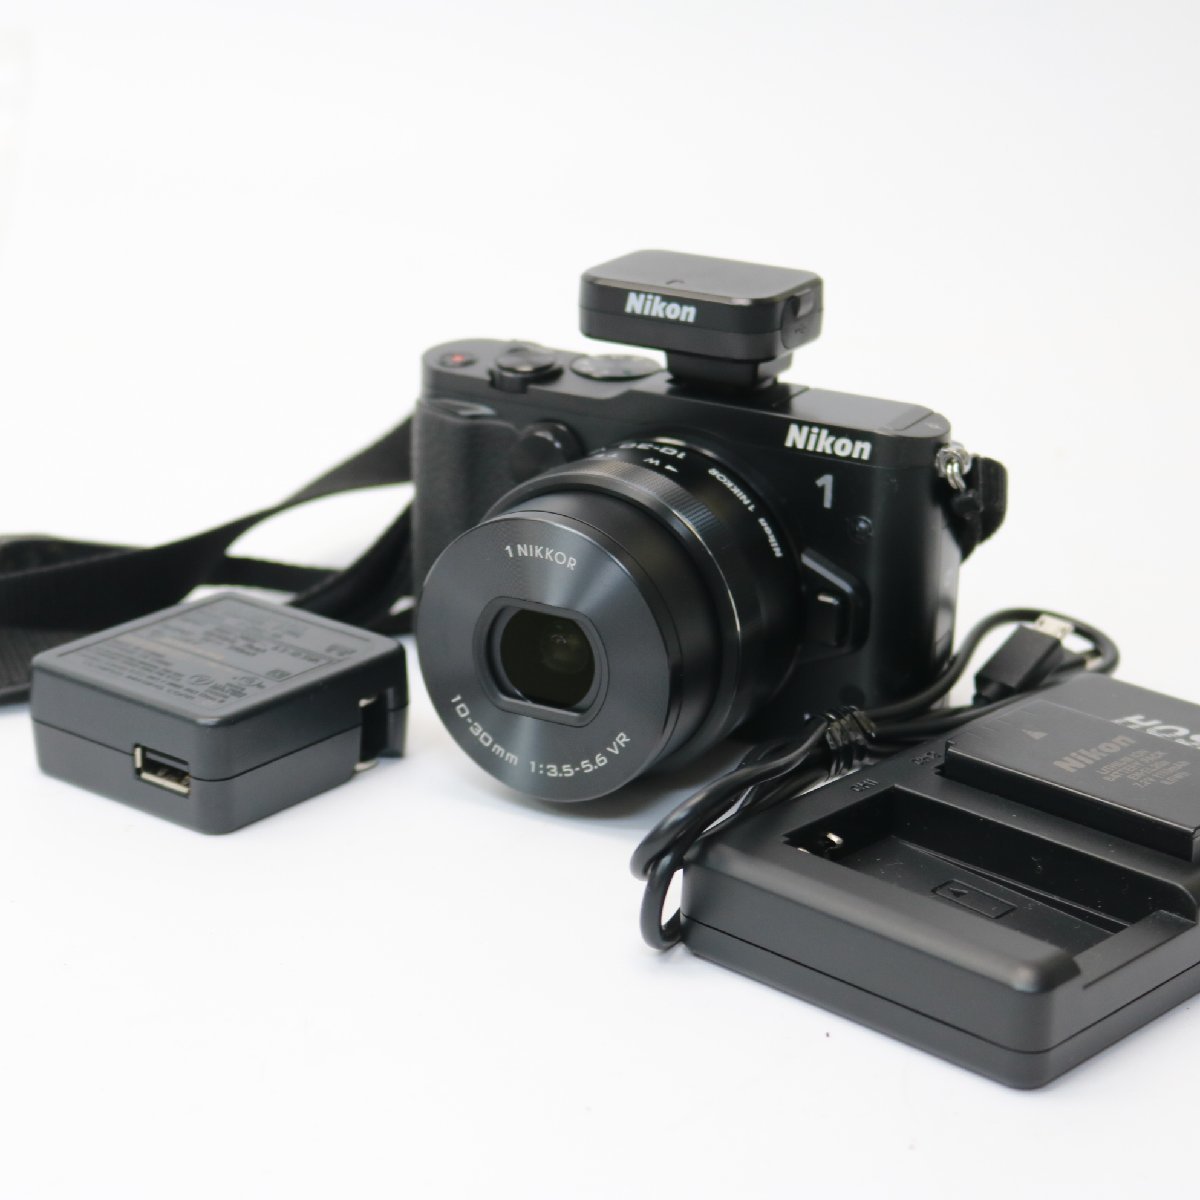 東京都品川区にて ニコン 一眼レフカメラ ニコン1 V3 ミラーレス  を出張買取させて頂きました。